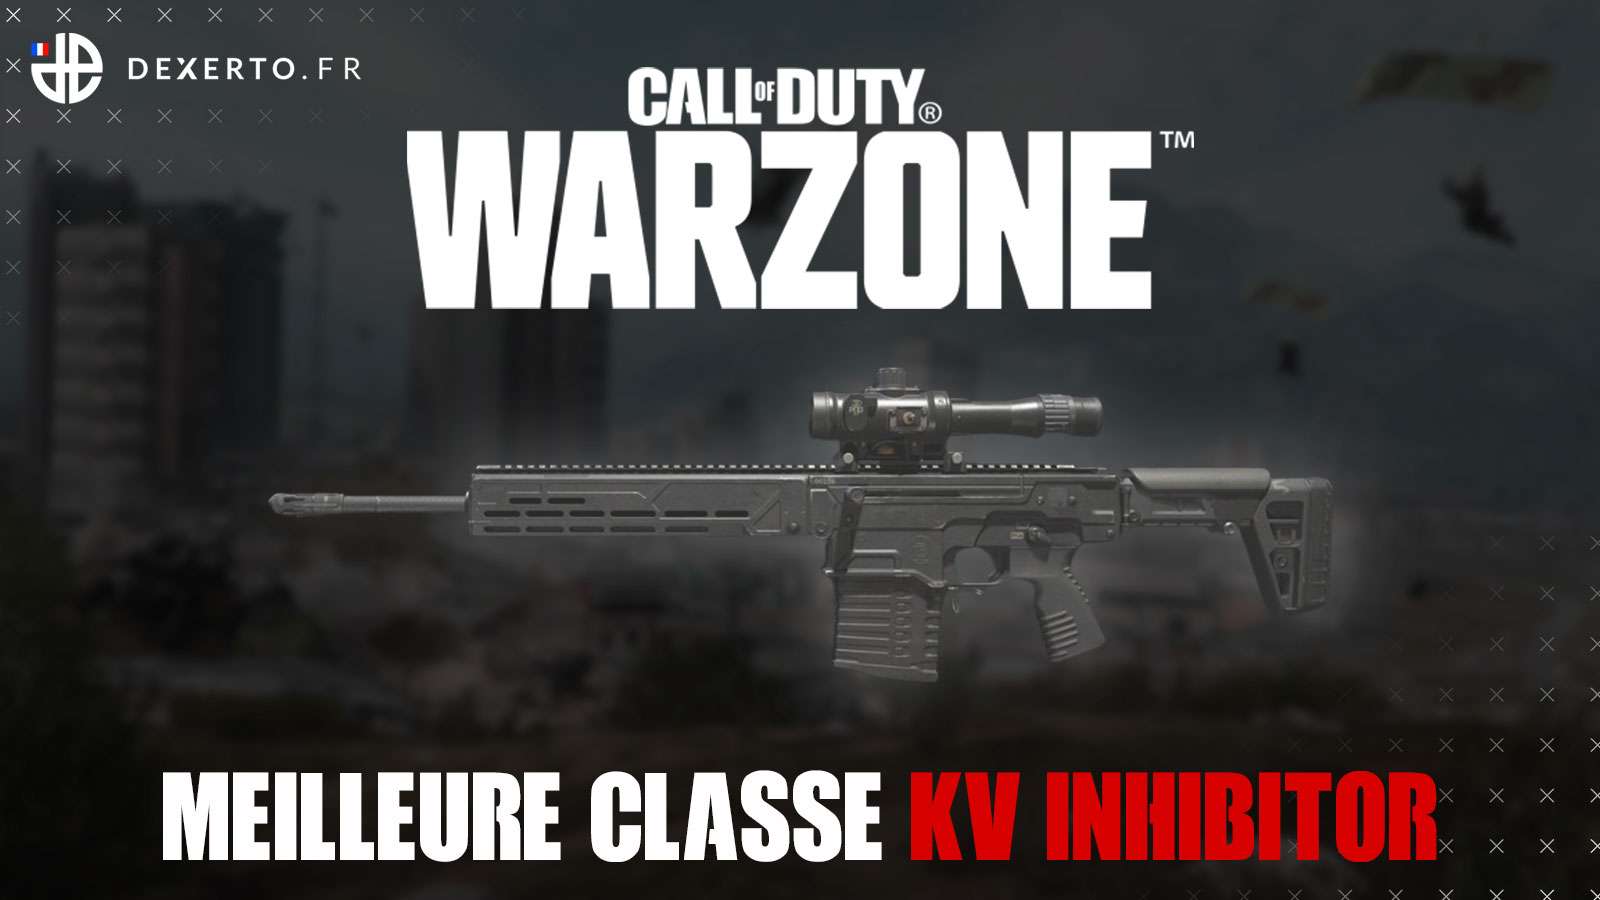 Warzone KV Inhibitor classe